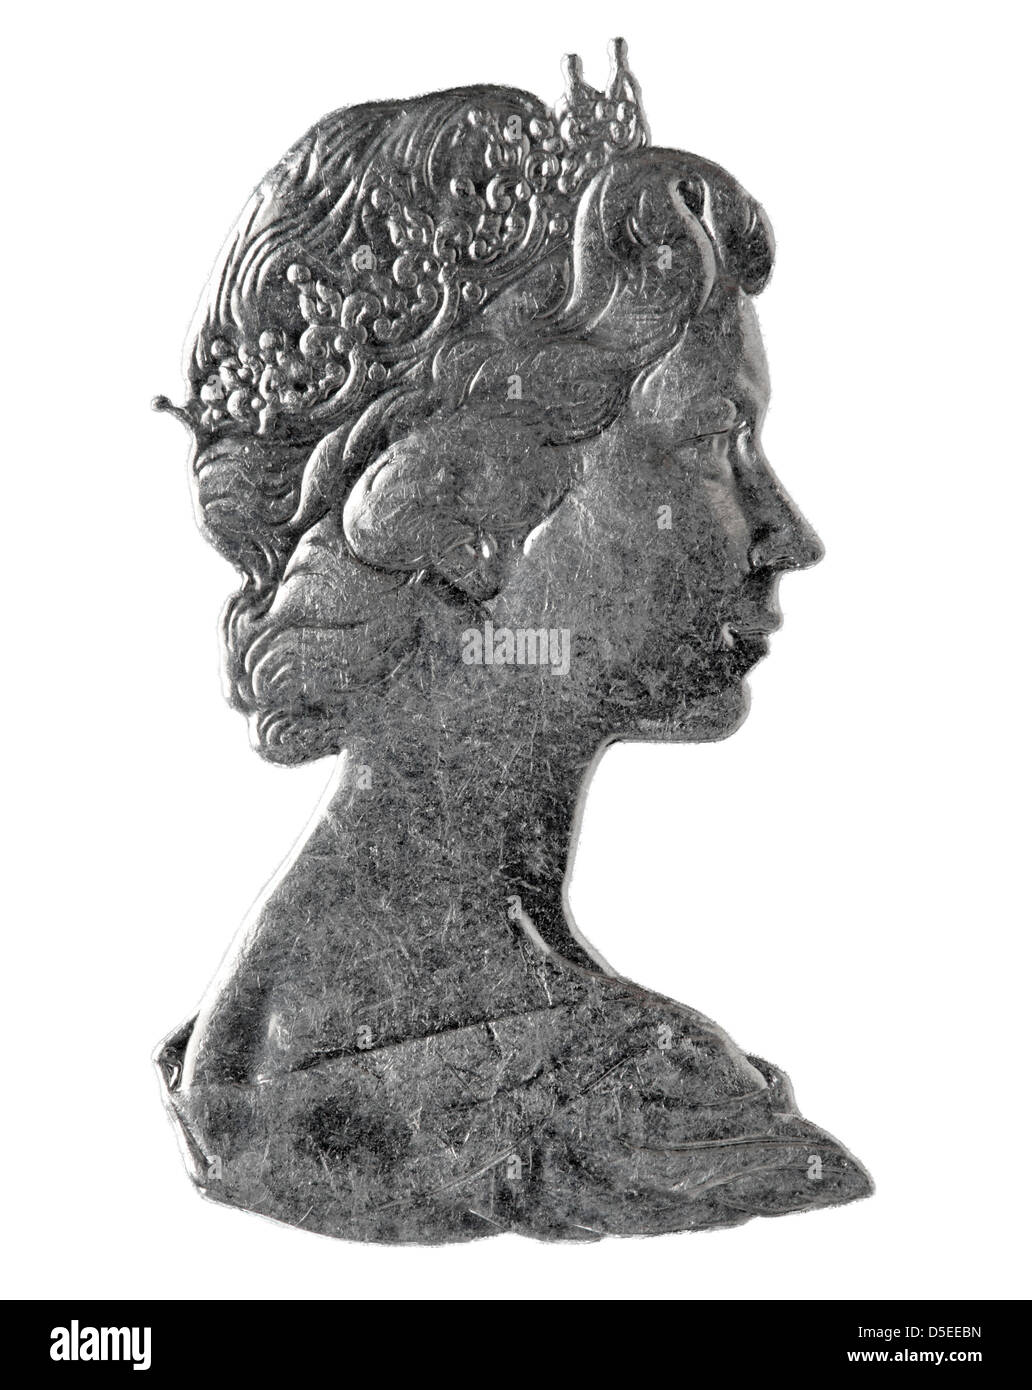 Argento bassorilievo della regina Elizabeth II da British coin, su sfondo bianco Foto Stock